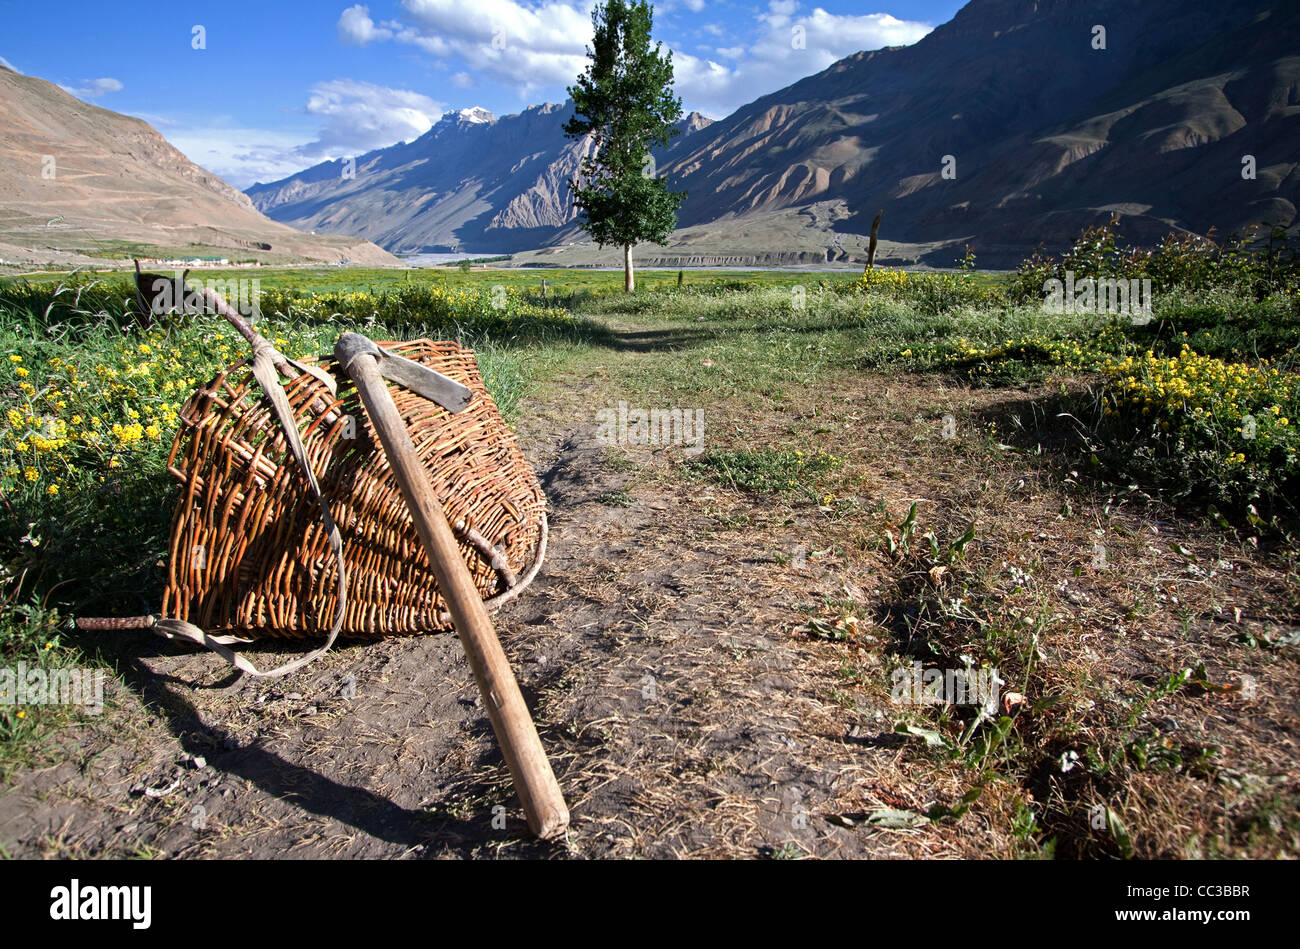 Traditionelle Himalaya Pflanzenproduktion mit atemberaubender Landschaft Hintergrund von Spiti Valley in Indien, die in eine Oase im Sommer dreht. Stockfoto